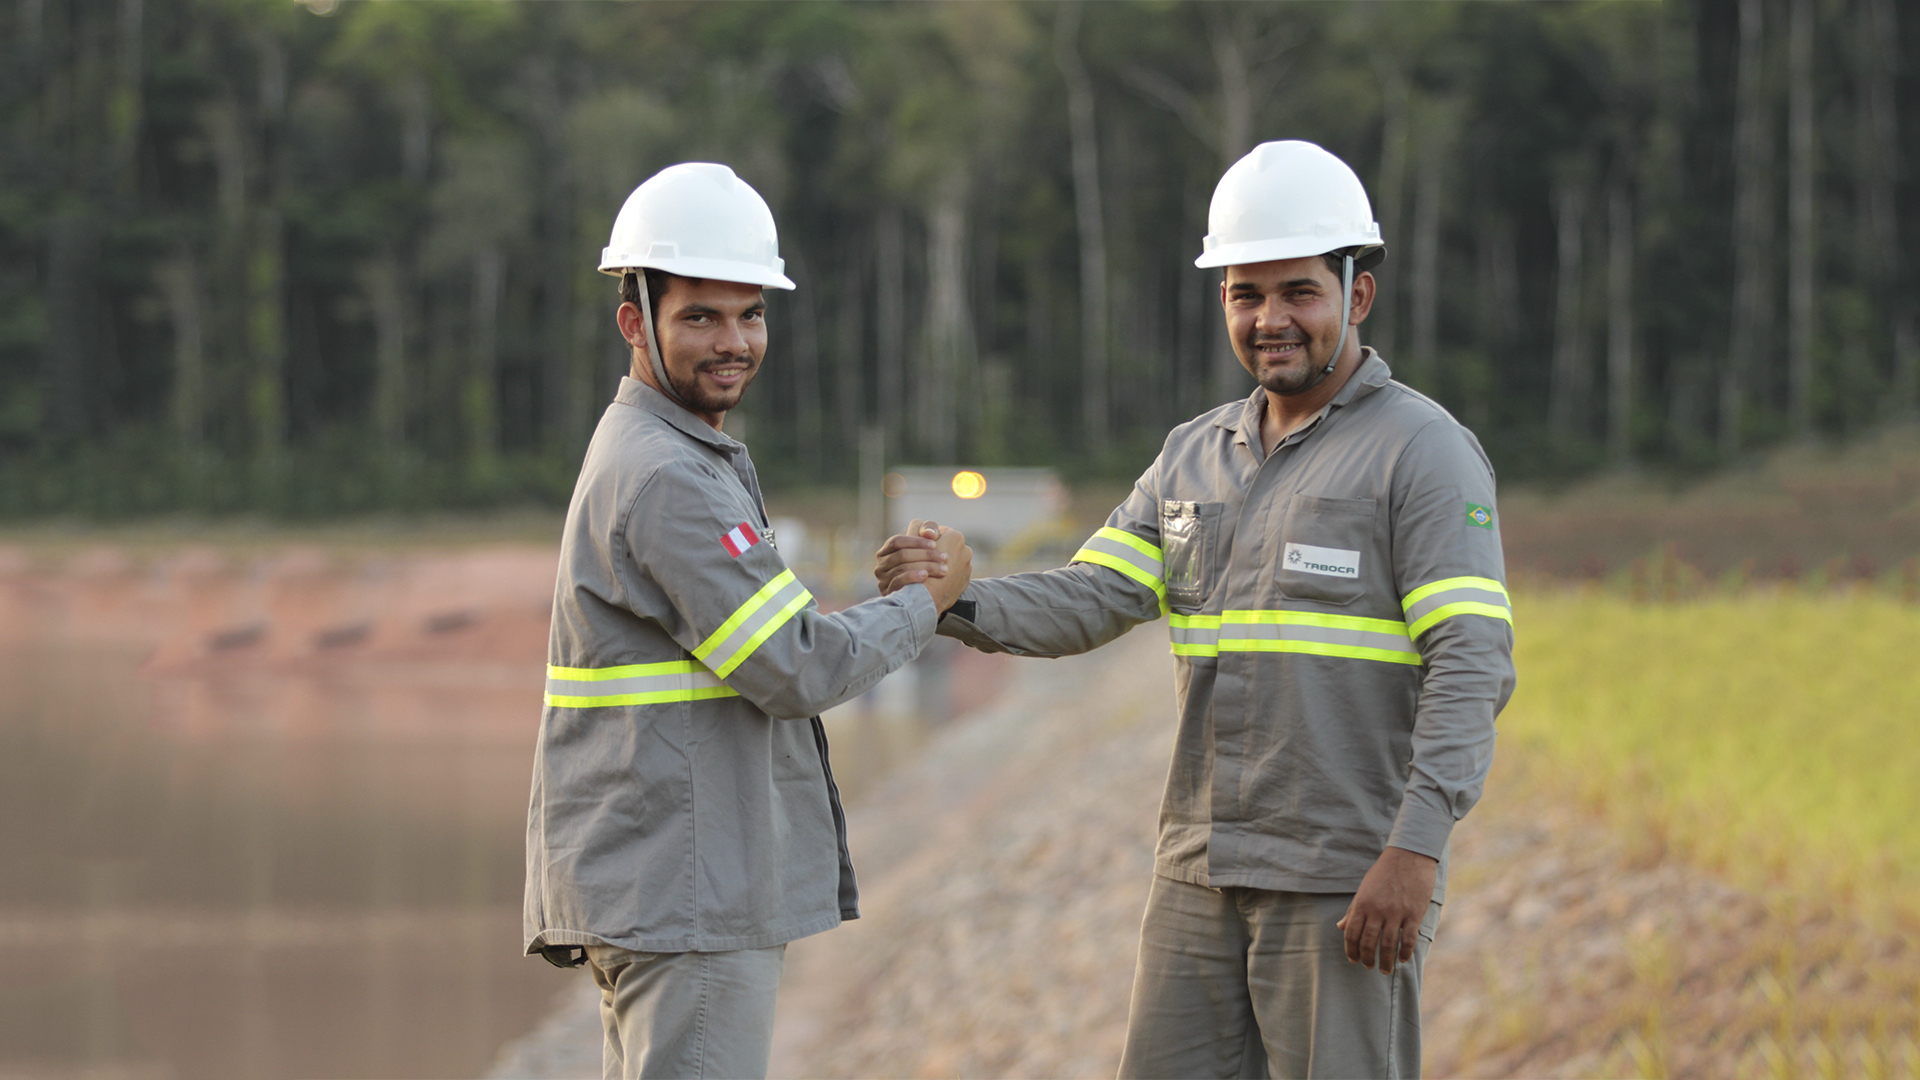 Mineração Taboca está contratando pessoas para diversos cargos em São Paulo e Amazonas, incluindo técnicos, assistentes, eletricistas e engenheiros